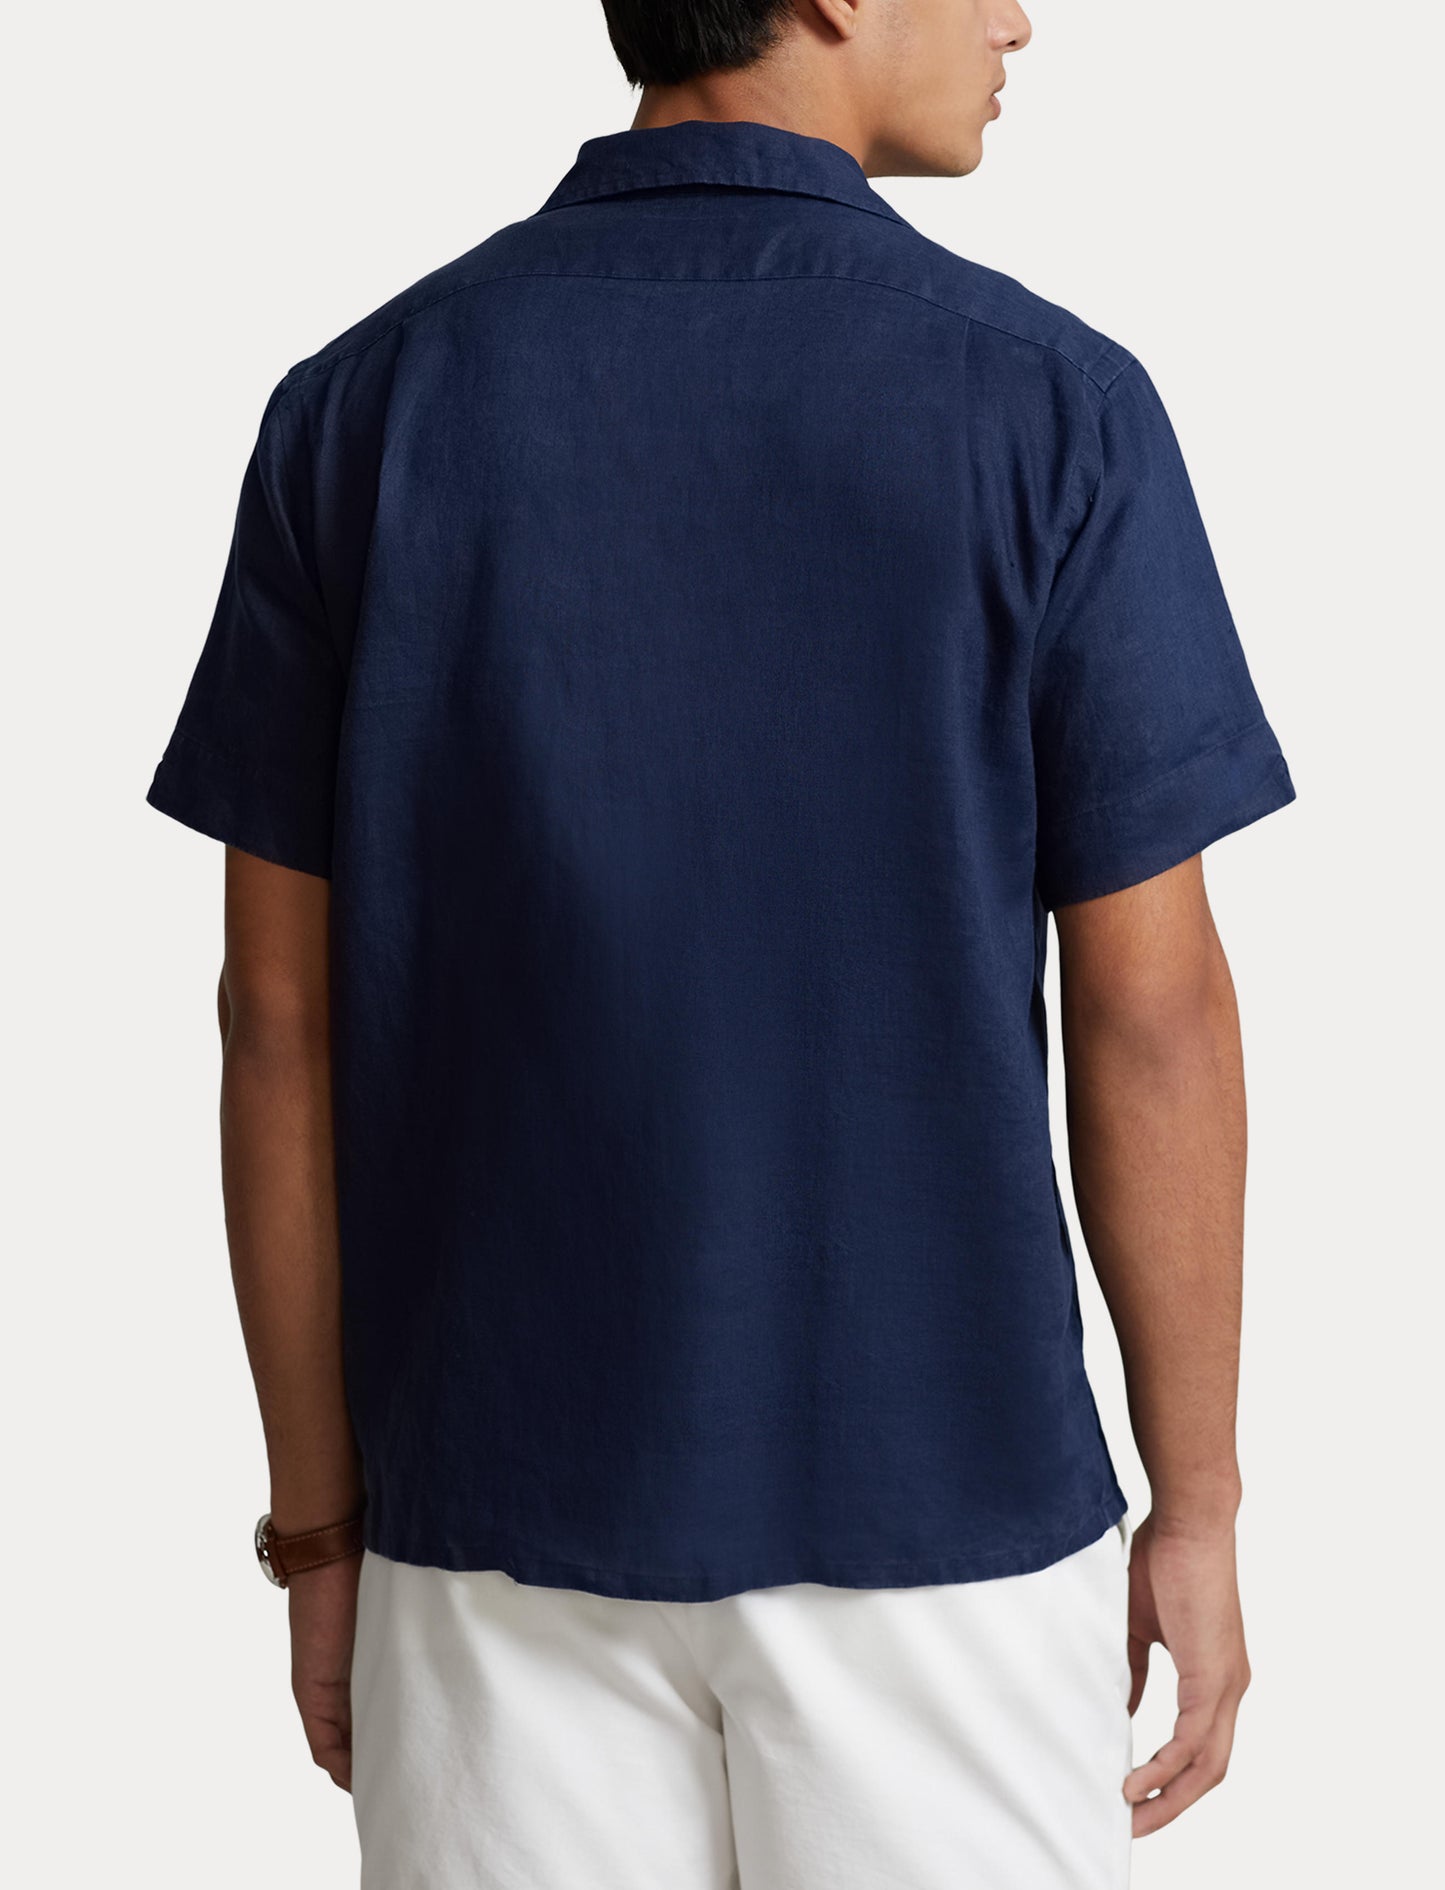 Polo Ralph Lauren SS Linen Sport Shirt Newport Navy